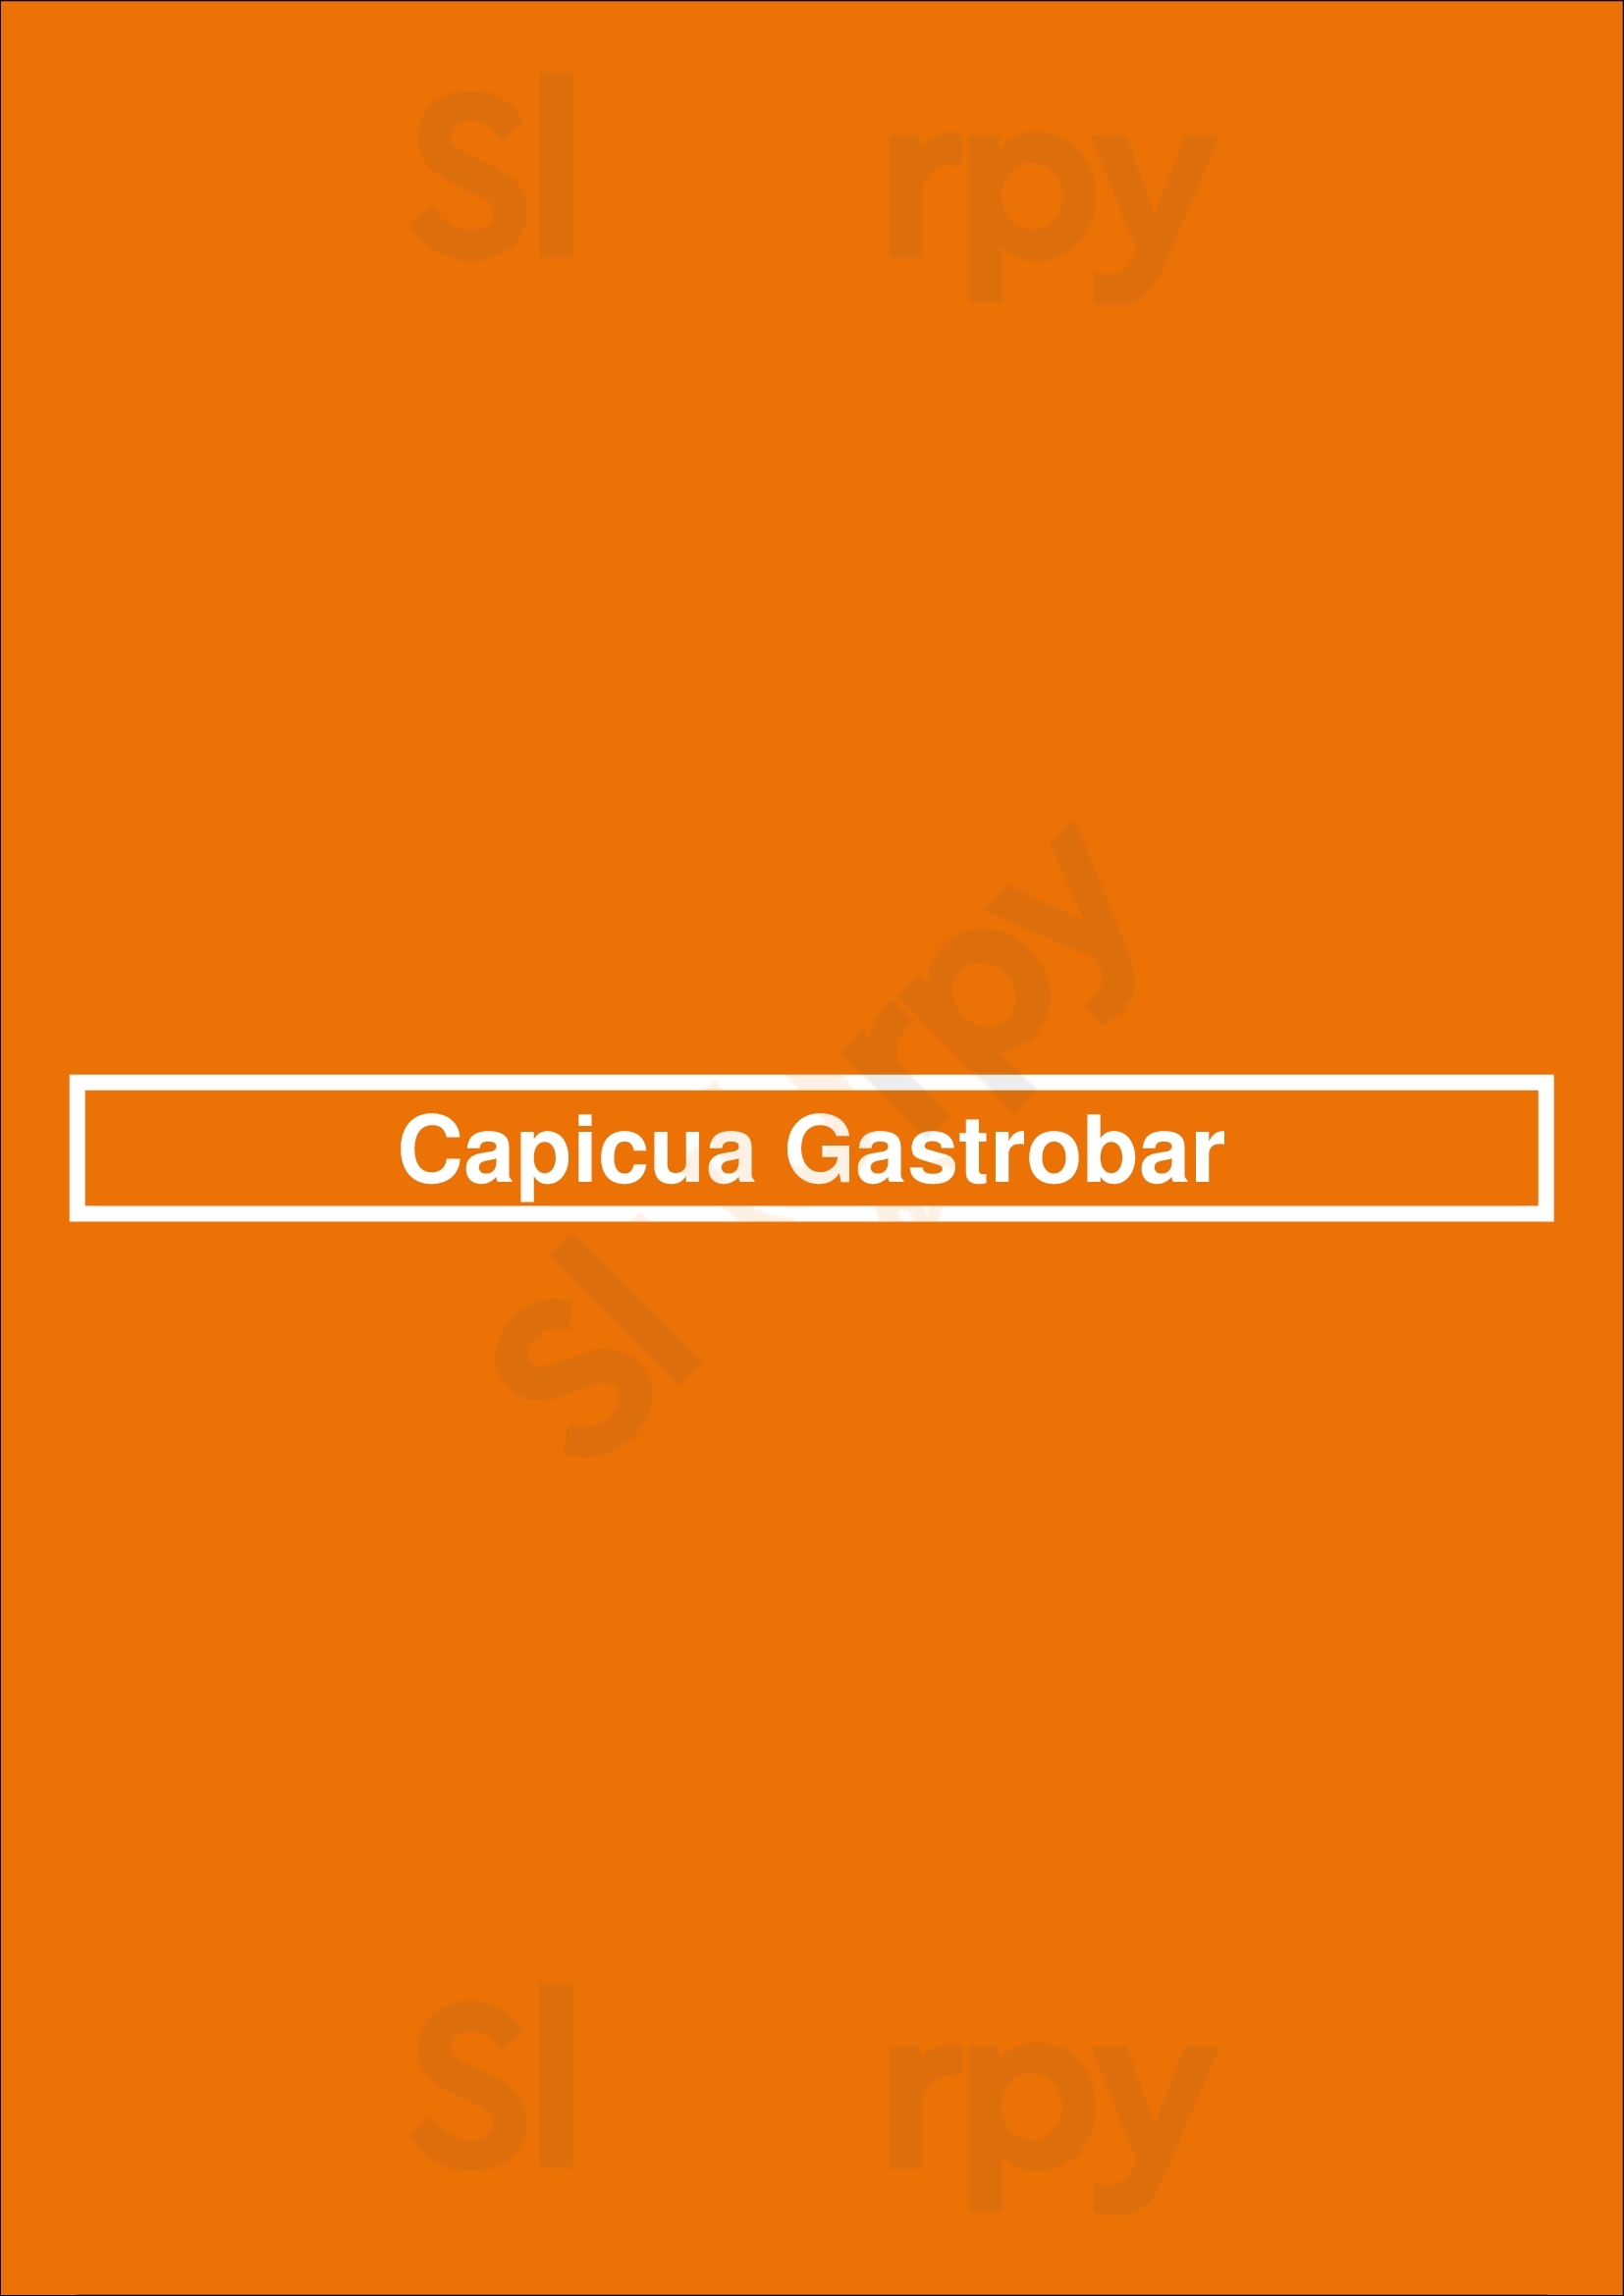 Capicua Gastrobar Vaciamadrid Menu - 1